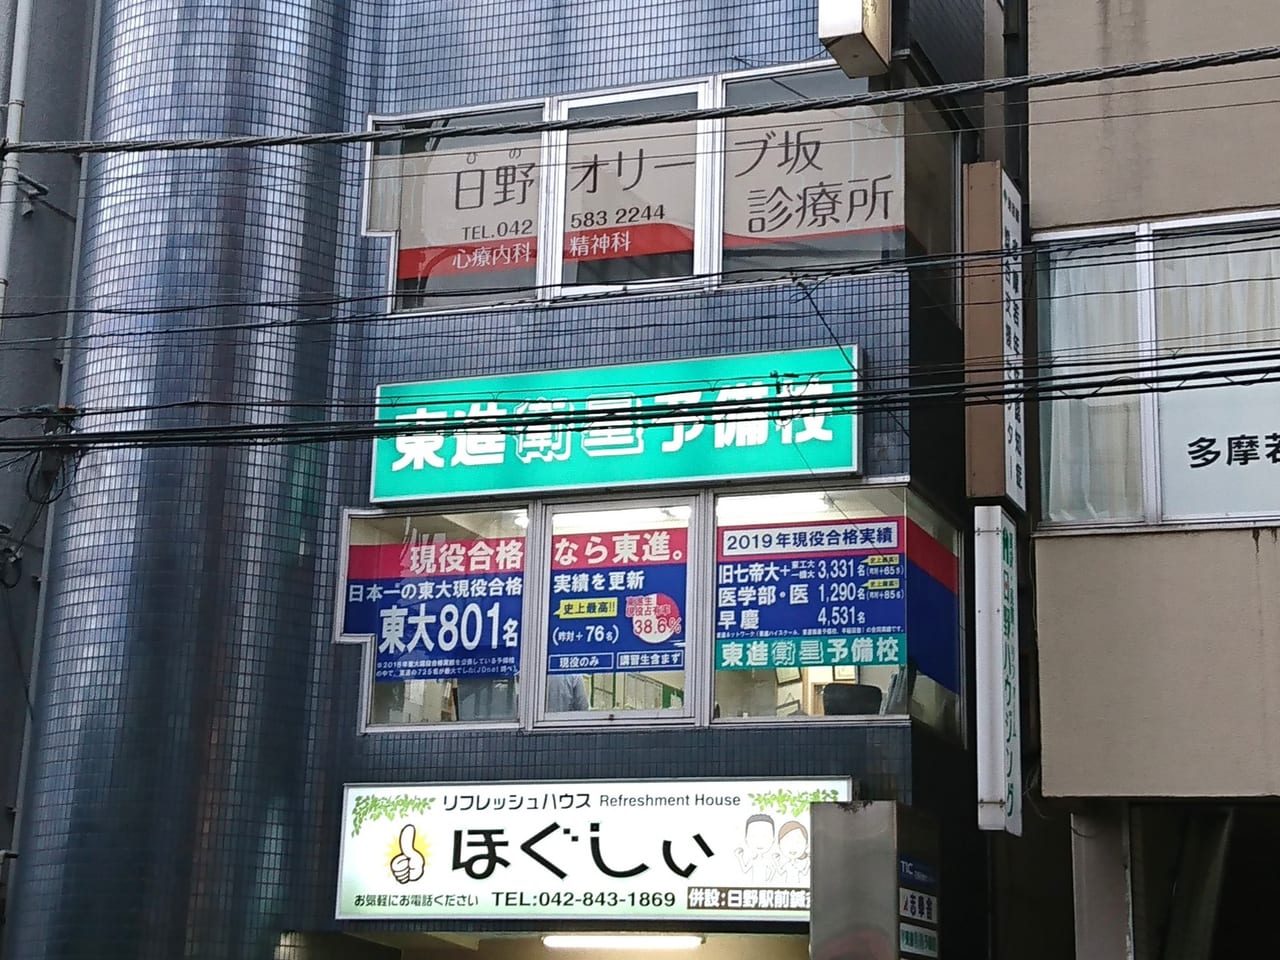 【日野市】日野駅前に心療内科・精神科の「日野オリーブ坂診療所」が2019年7月1日開院しました。 日野市